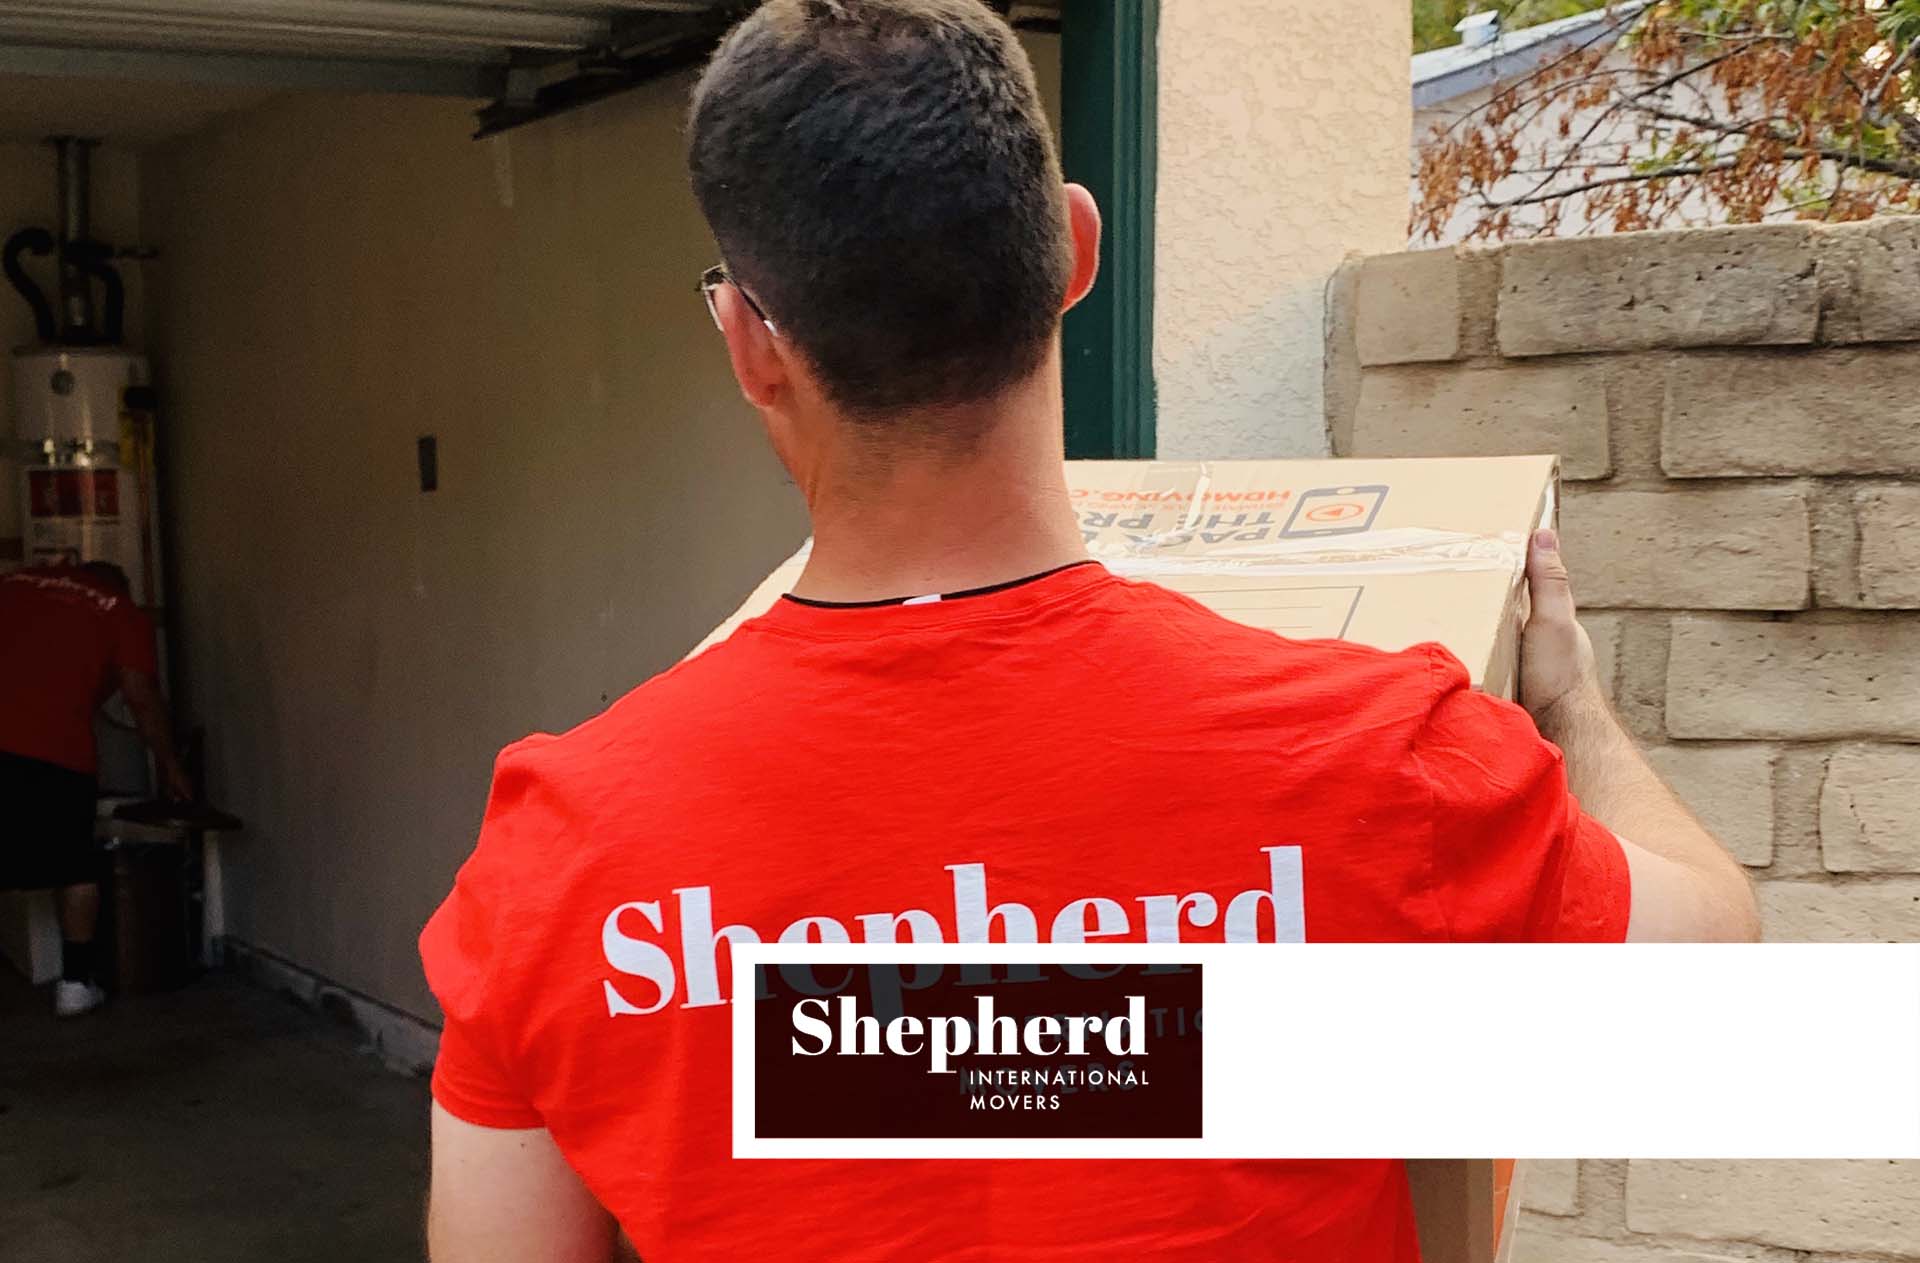 Shepherd International Movers